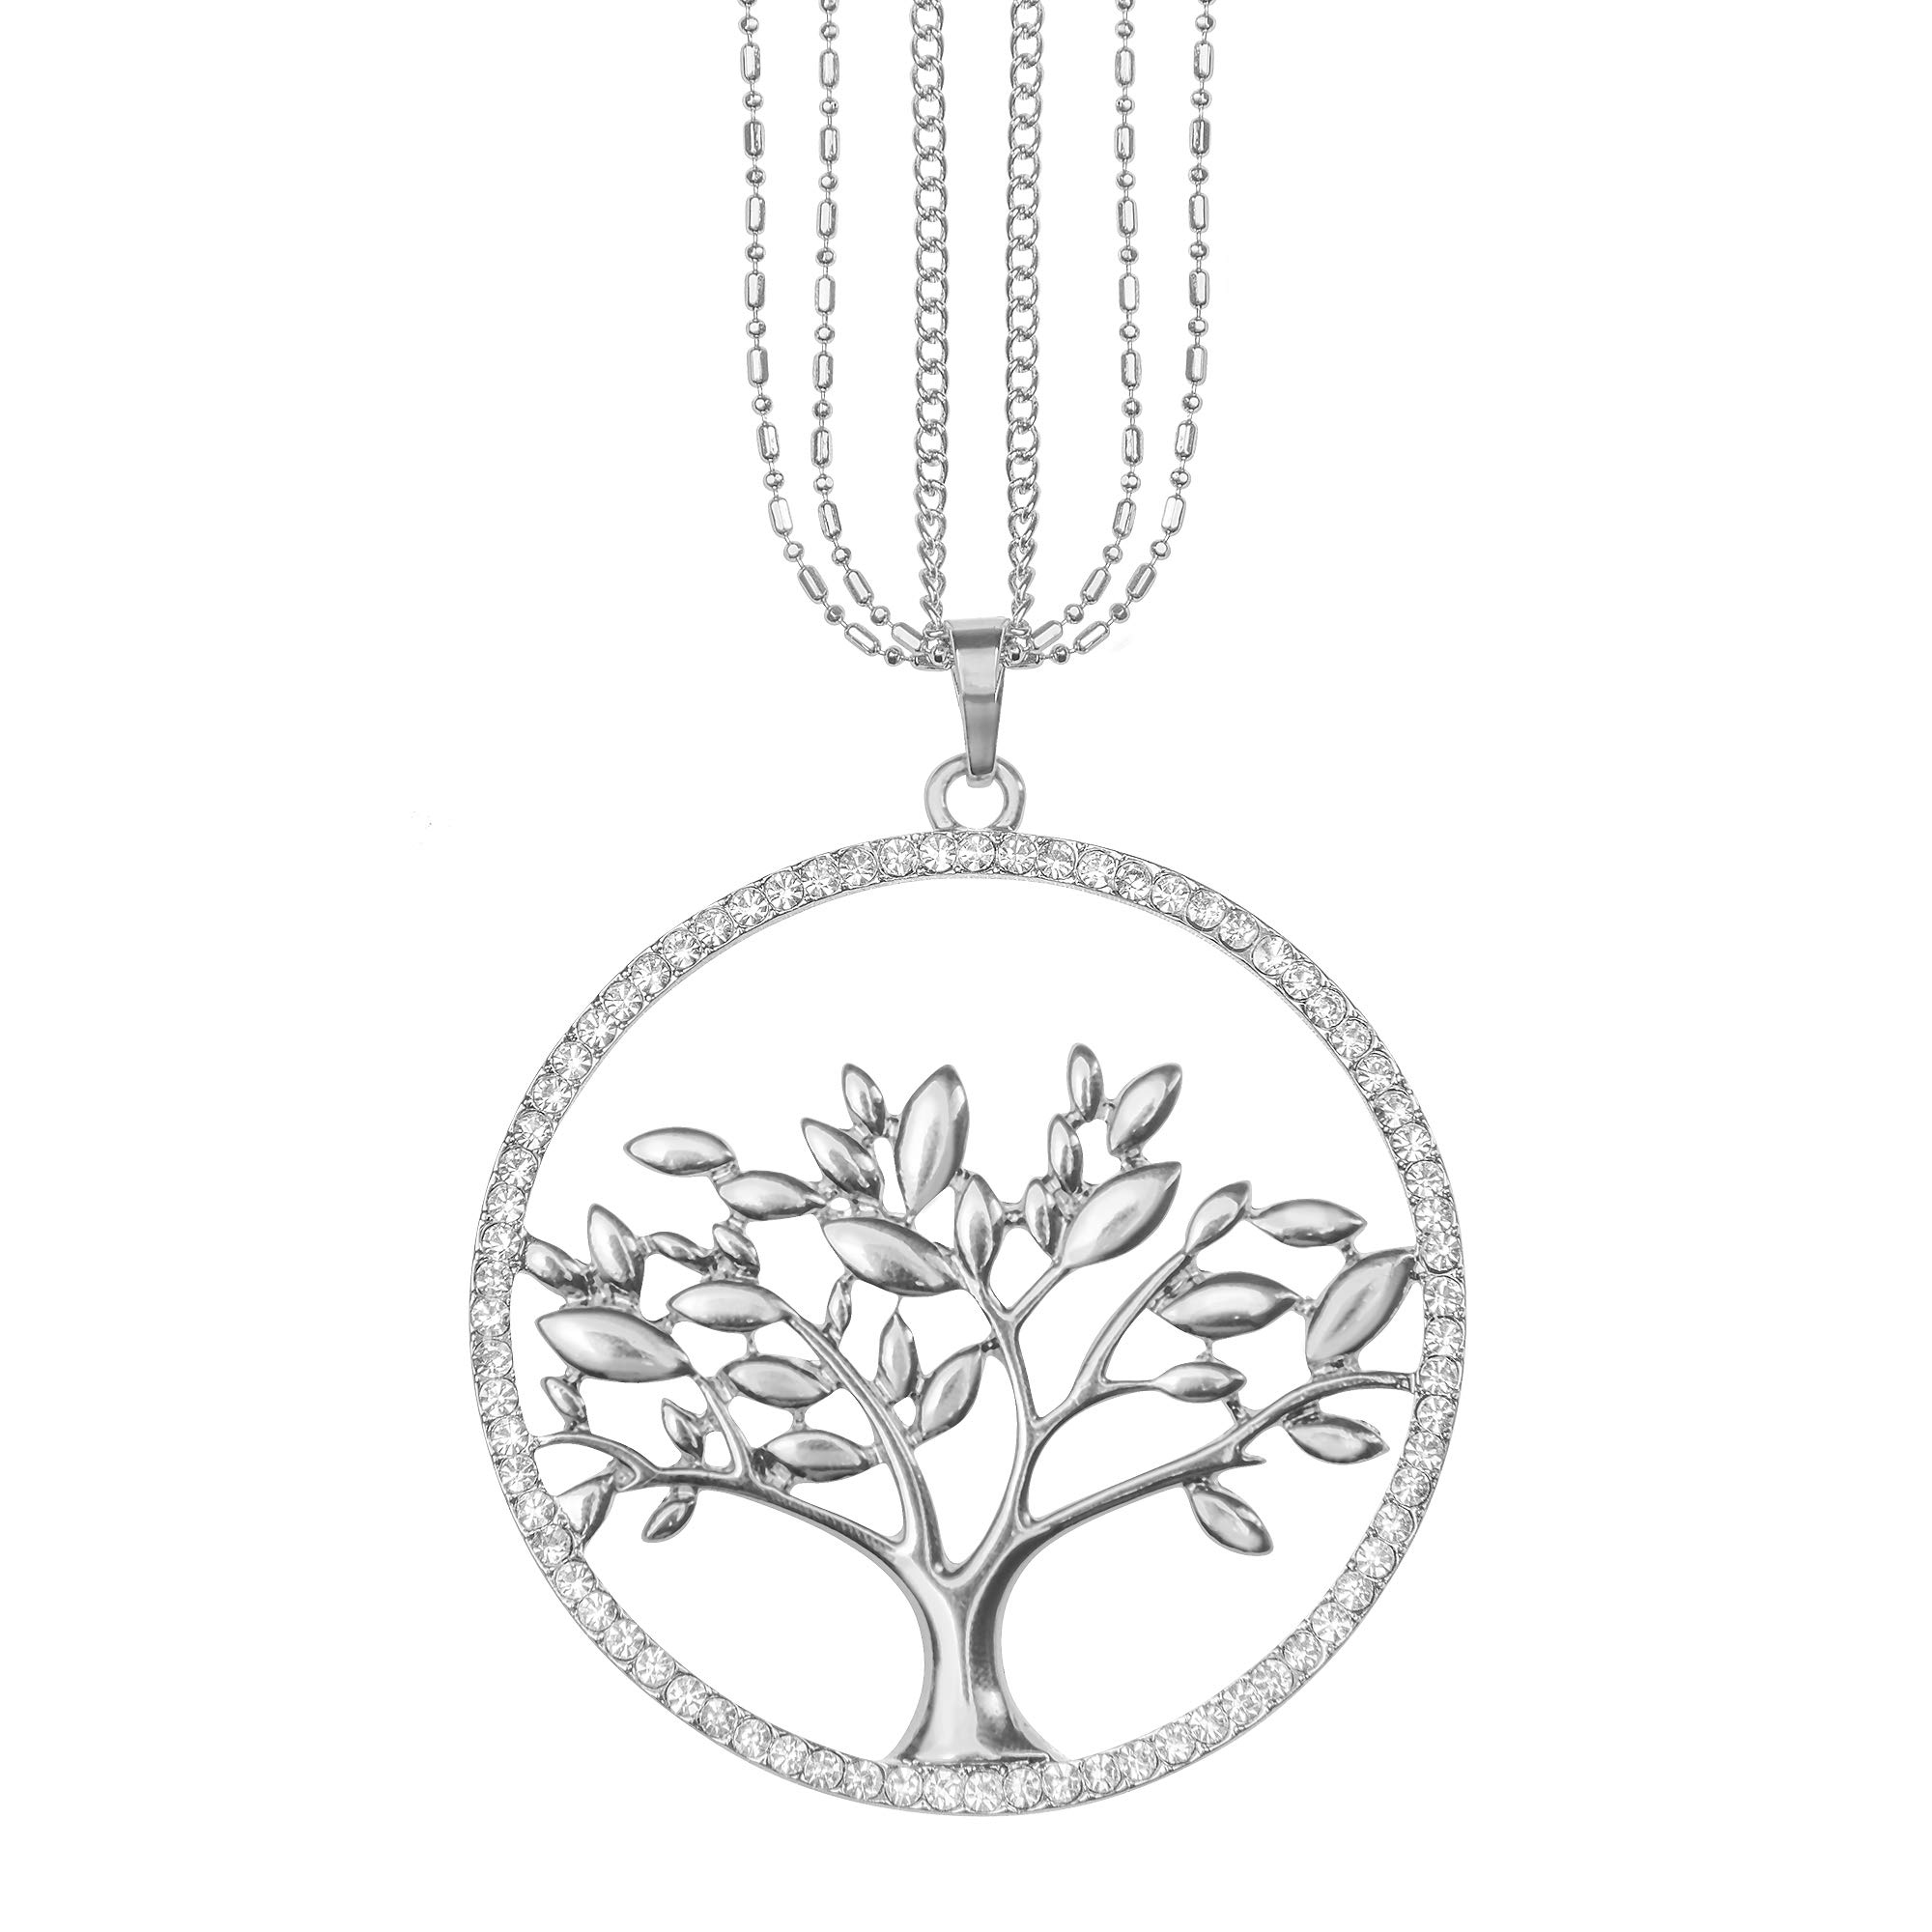 Mianova Damen Lange Halskette Kette Lebensbaum Anhänger mit Swarovski Elements Strass Kristall Steinen Lang Silber Groß